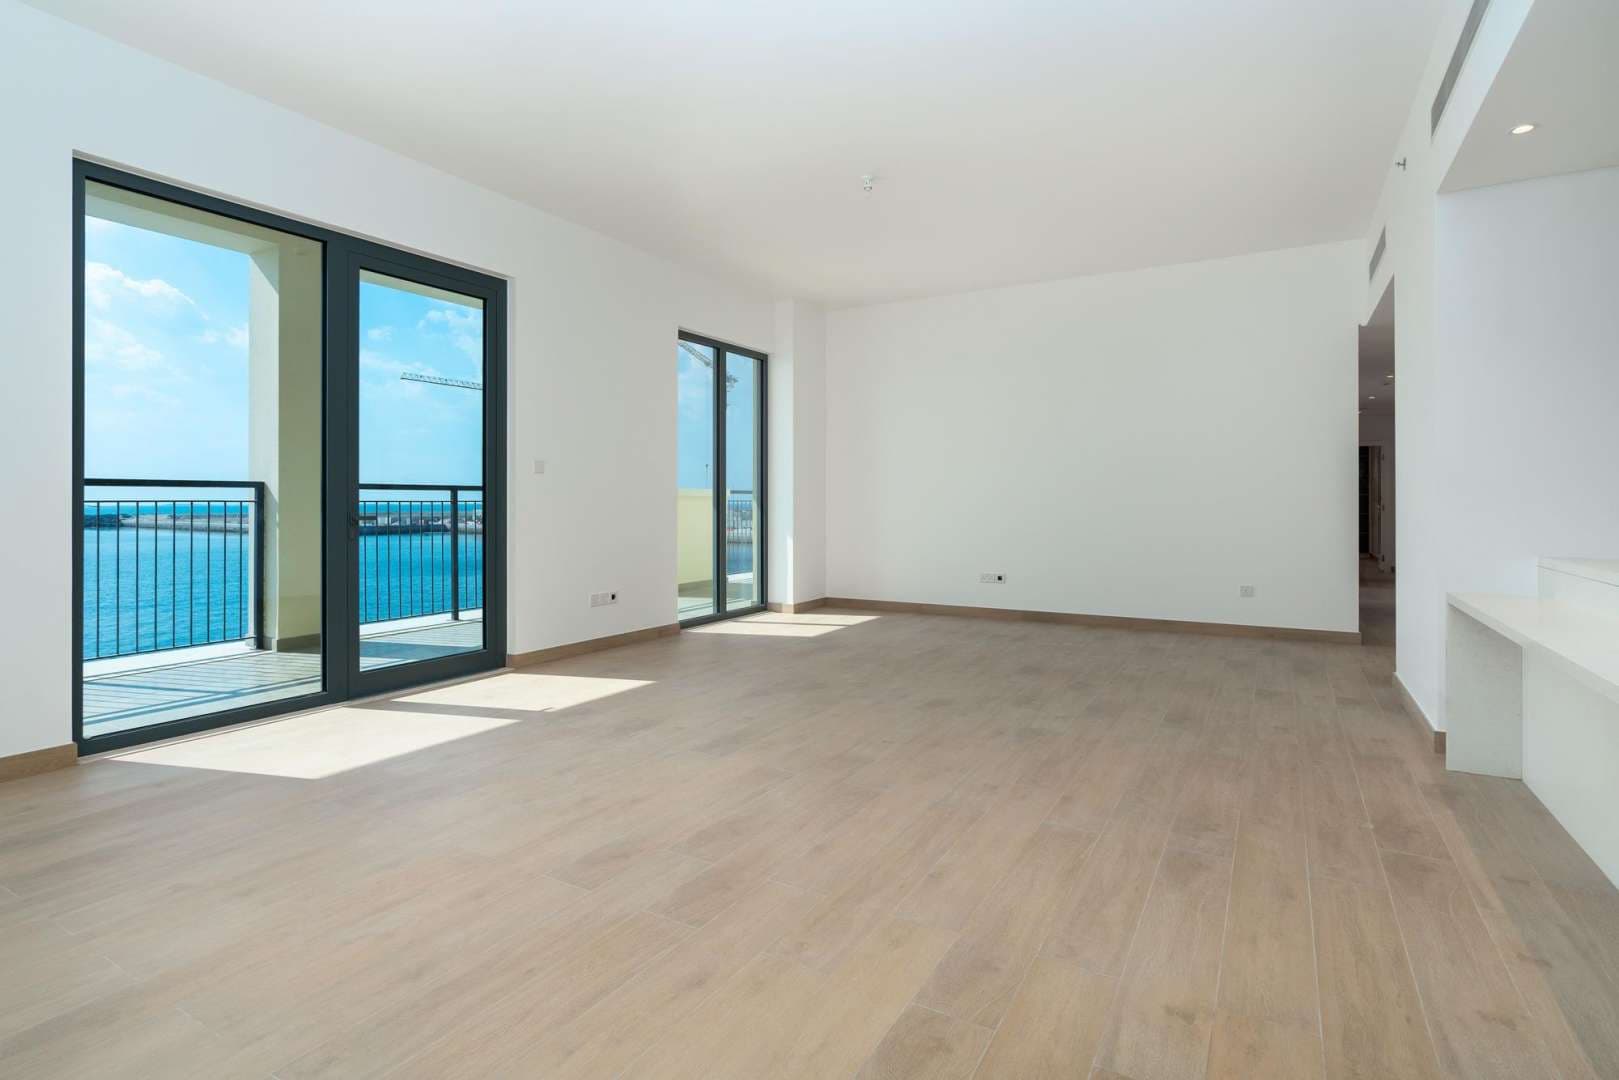  Bedroom Apartment For Sale Port De La Mer Lp01407 67837b4f8a68380.jpg